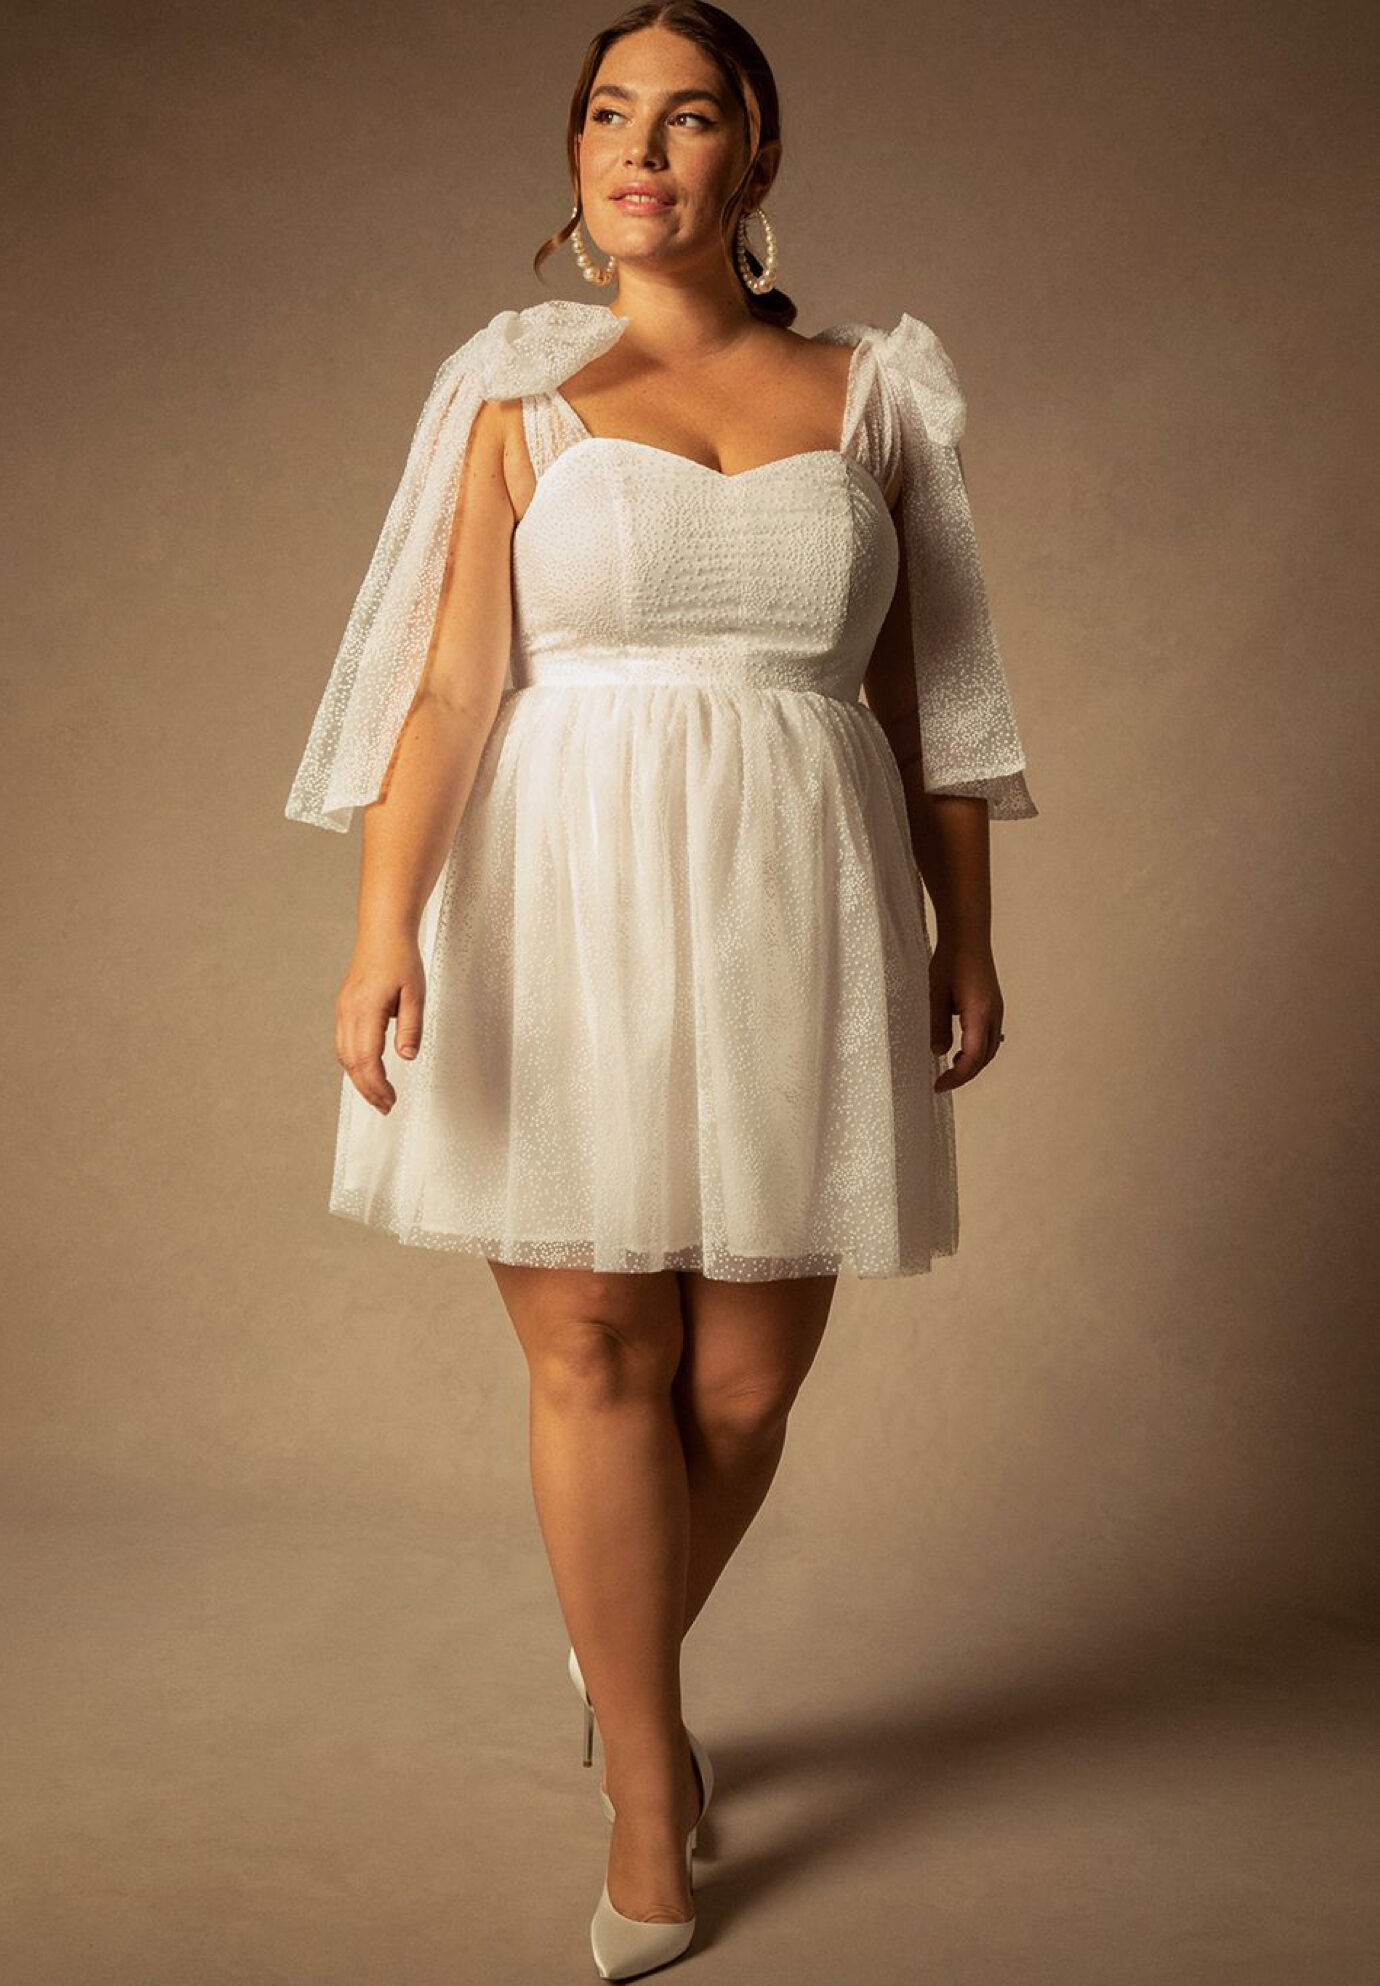 Plus Size Full-Skirt Fitted Short Wedding Dress